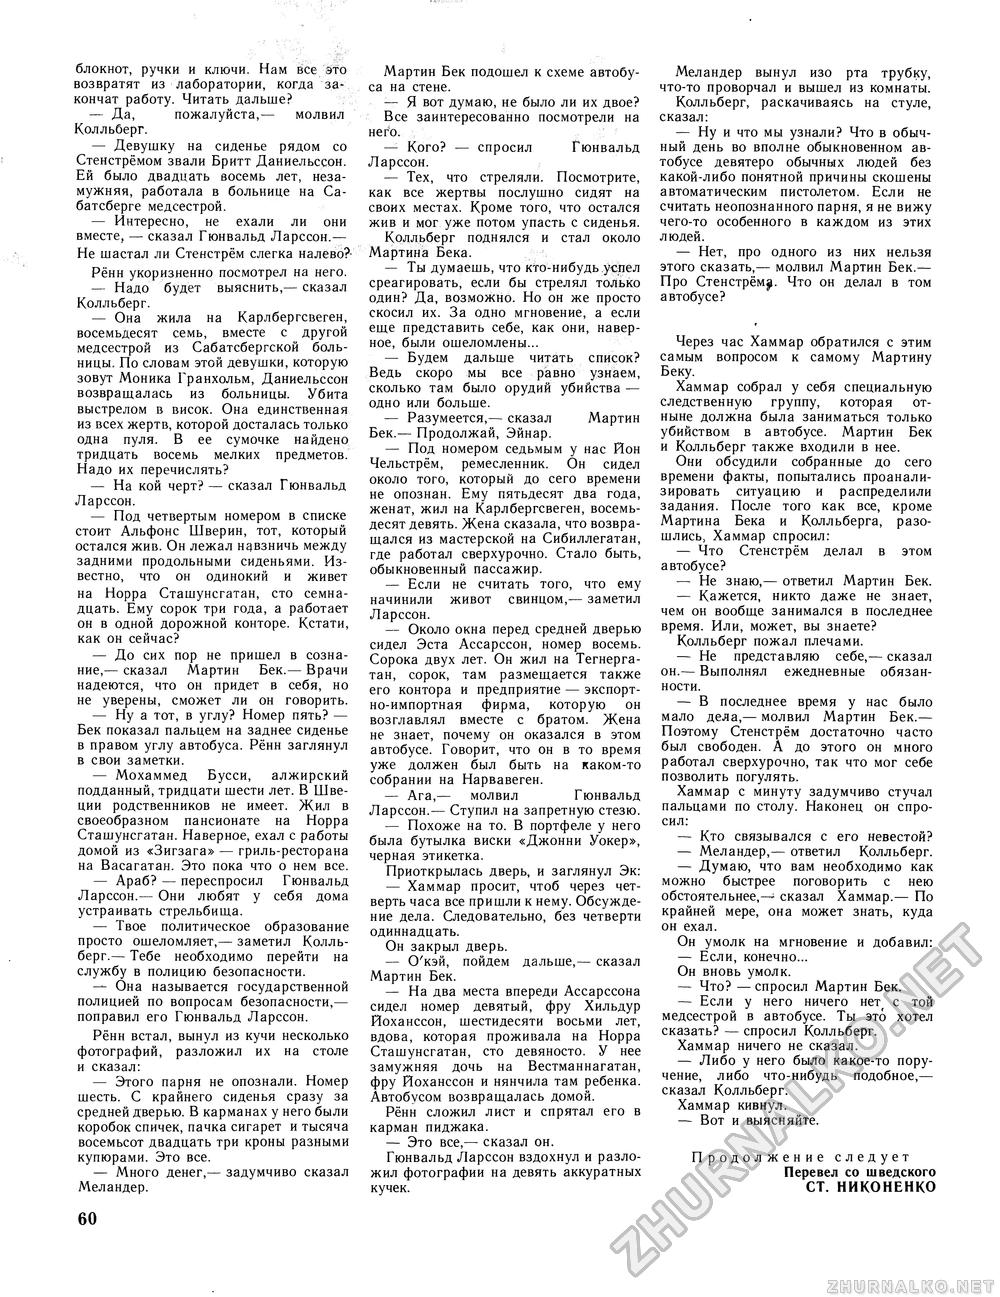 Вокруг света 1981-03, страница 62